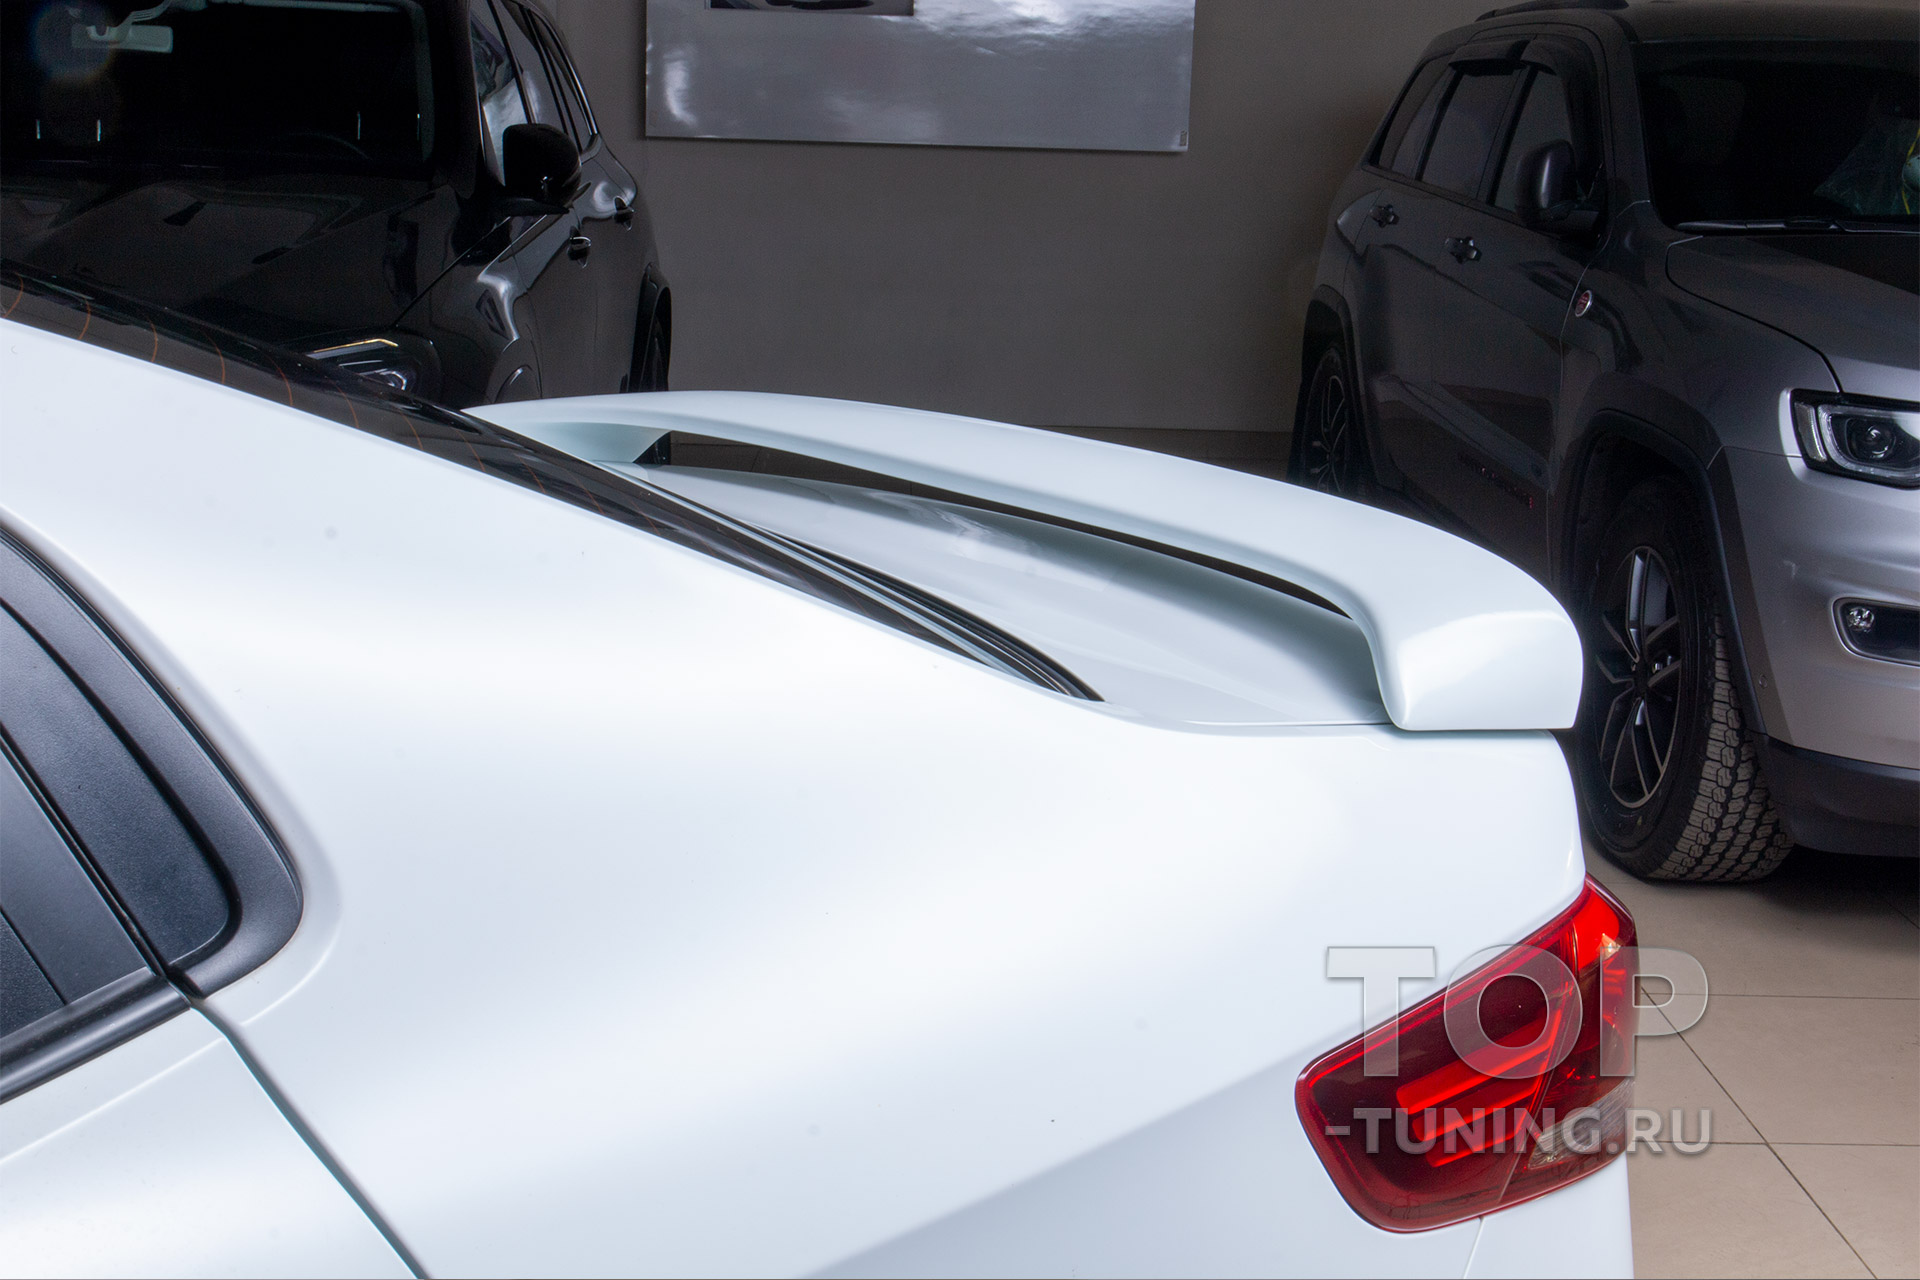 Тюнинг Киа Рио 3 - новый спойлер на крышку багажника, в цвет кузова